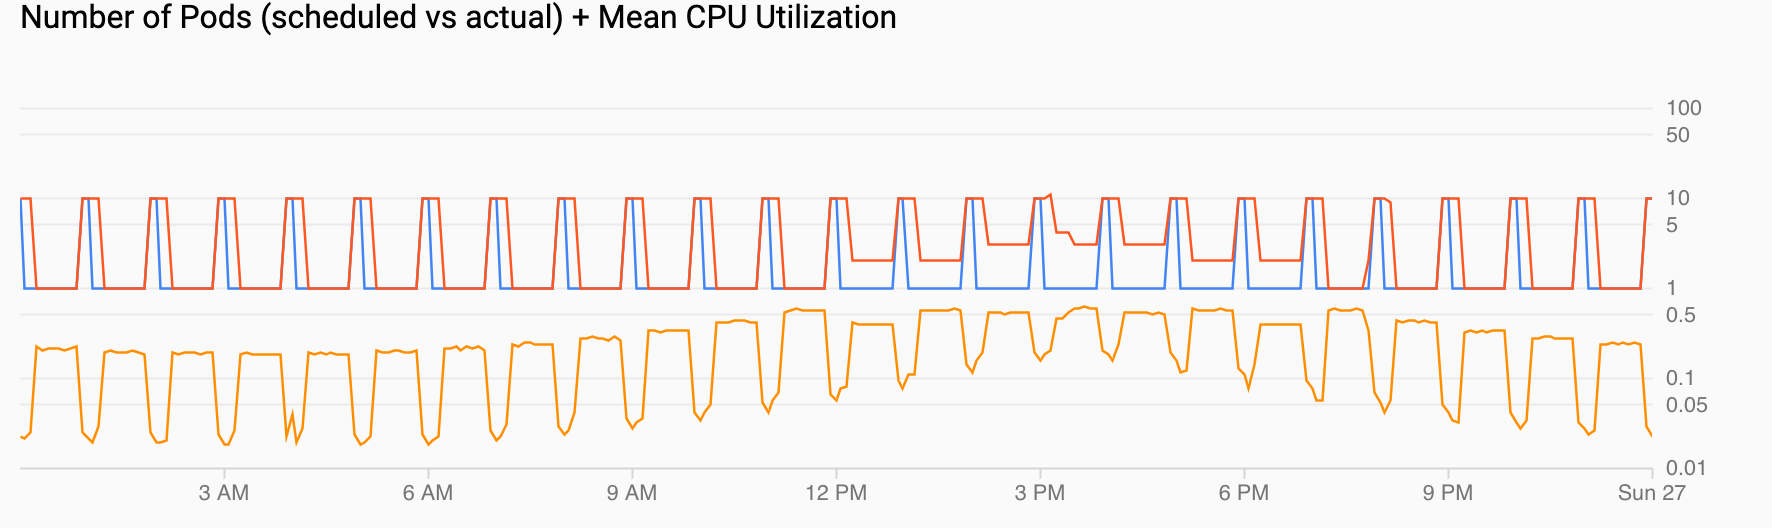 2 grafici. Uno mostra la domanda di pod con picchi di domanda ogni ora. L'altra mostra che l'utilizzo della CPU aumenta o diminuisce, ma si aggiunge al valore elevato configurato.